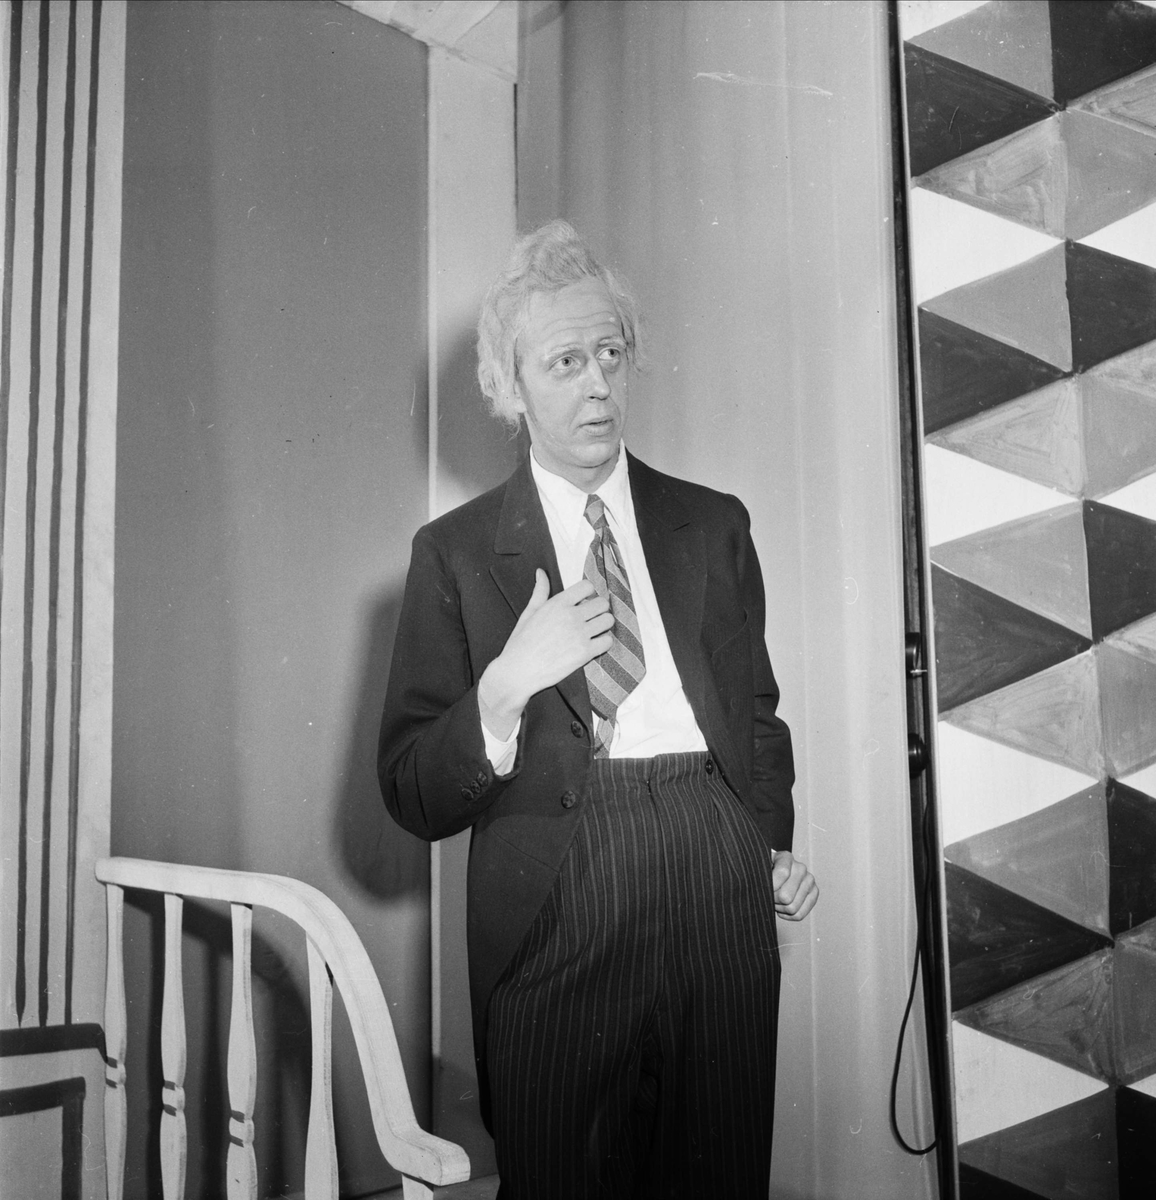 Skådespelare - Anders Almgrens revyer, Uppsala 1953